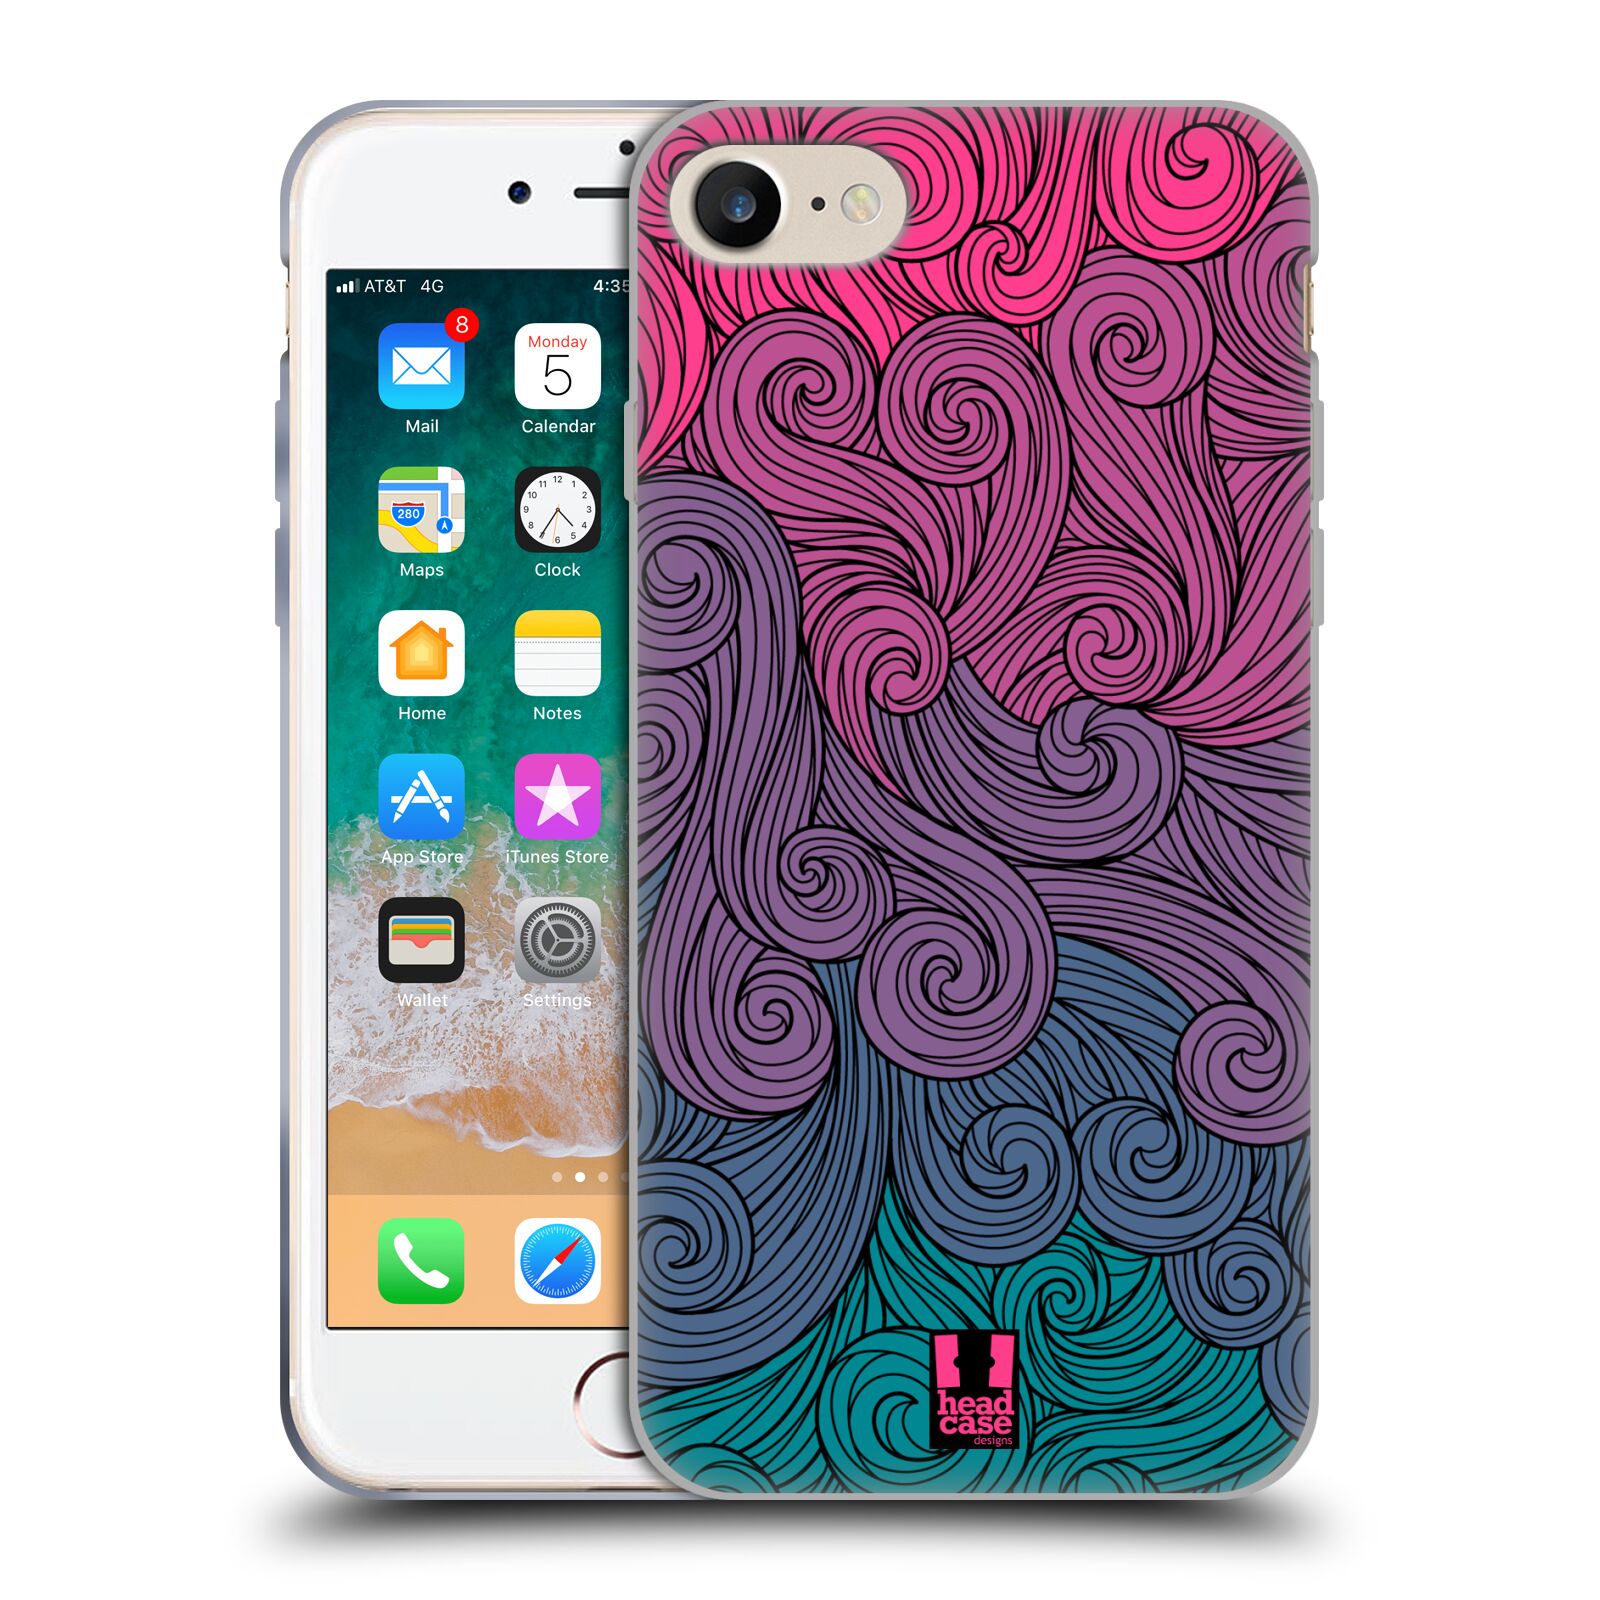 Silikonové pouzdro na mobil Apple iPhone SE 2022 / SE 2020 - Head Case - Swirls Hot Pink (Silikonový kryt, obal, pouzdro na mobilní telefon Apple iPhone SE 2020 / Apple iPhone SE 2022 s motivem Swirls Hot Pink)